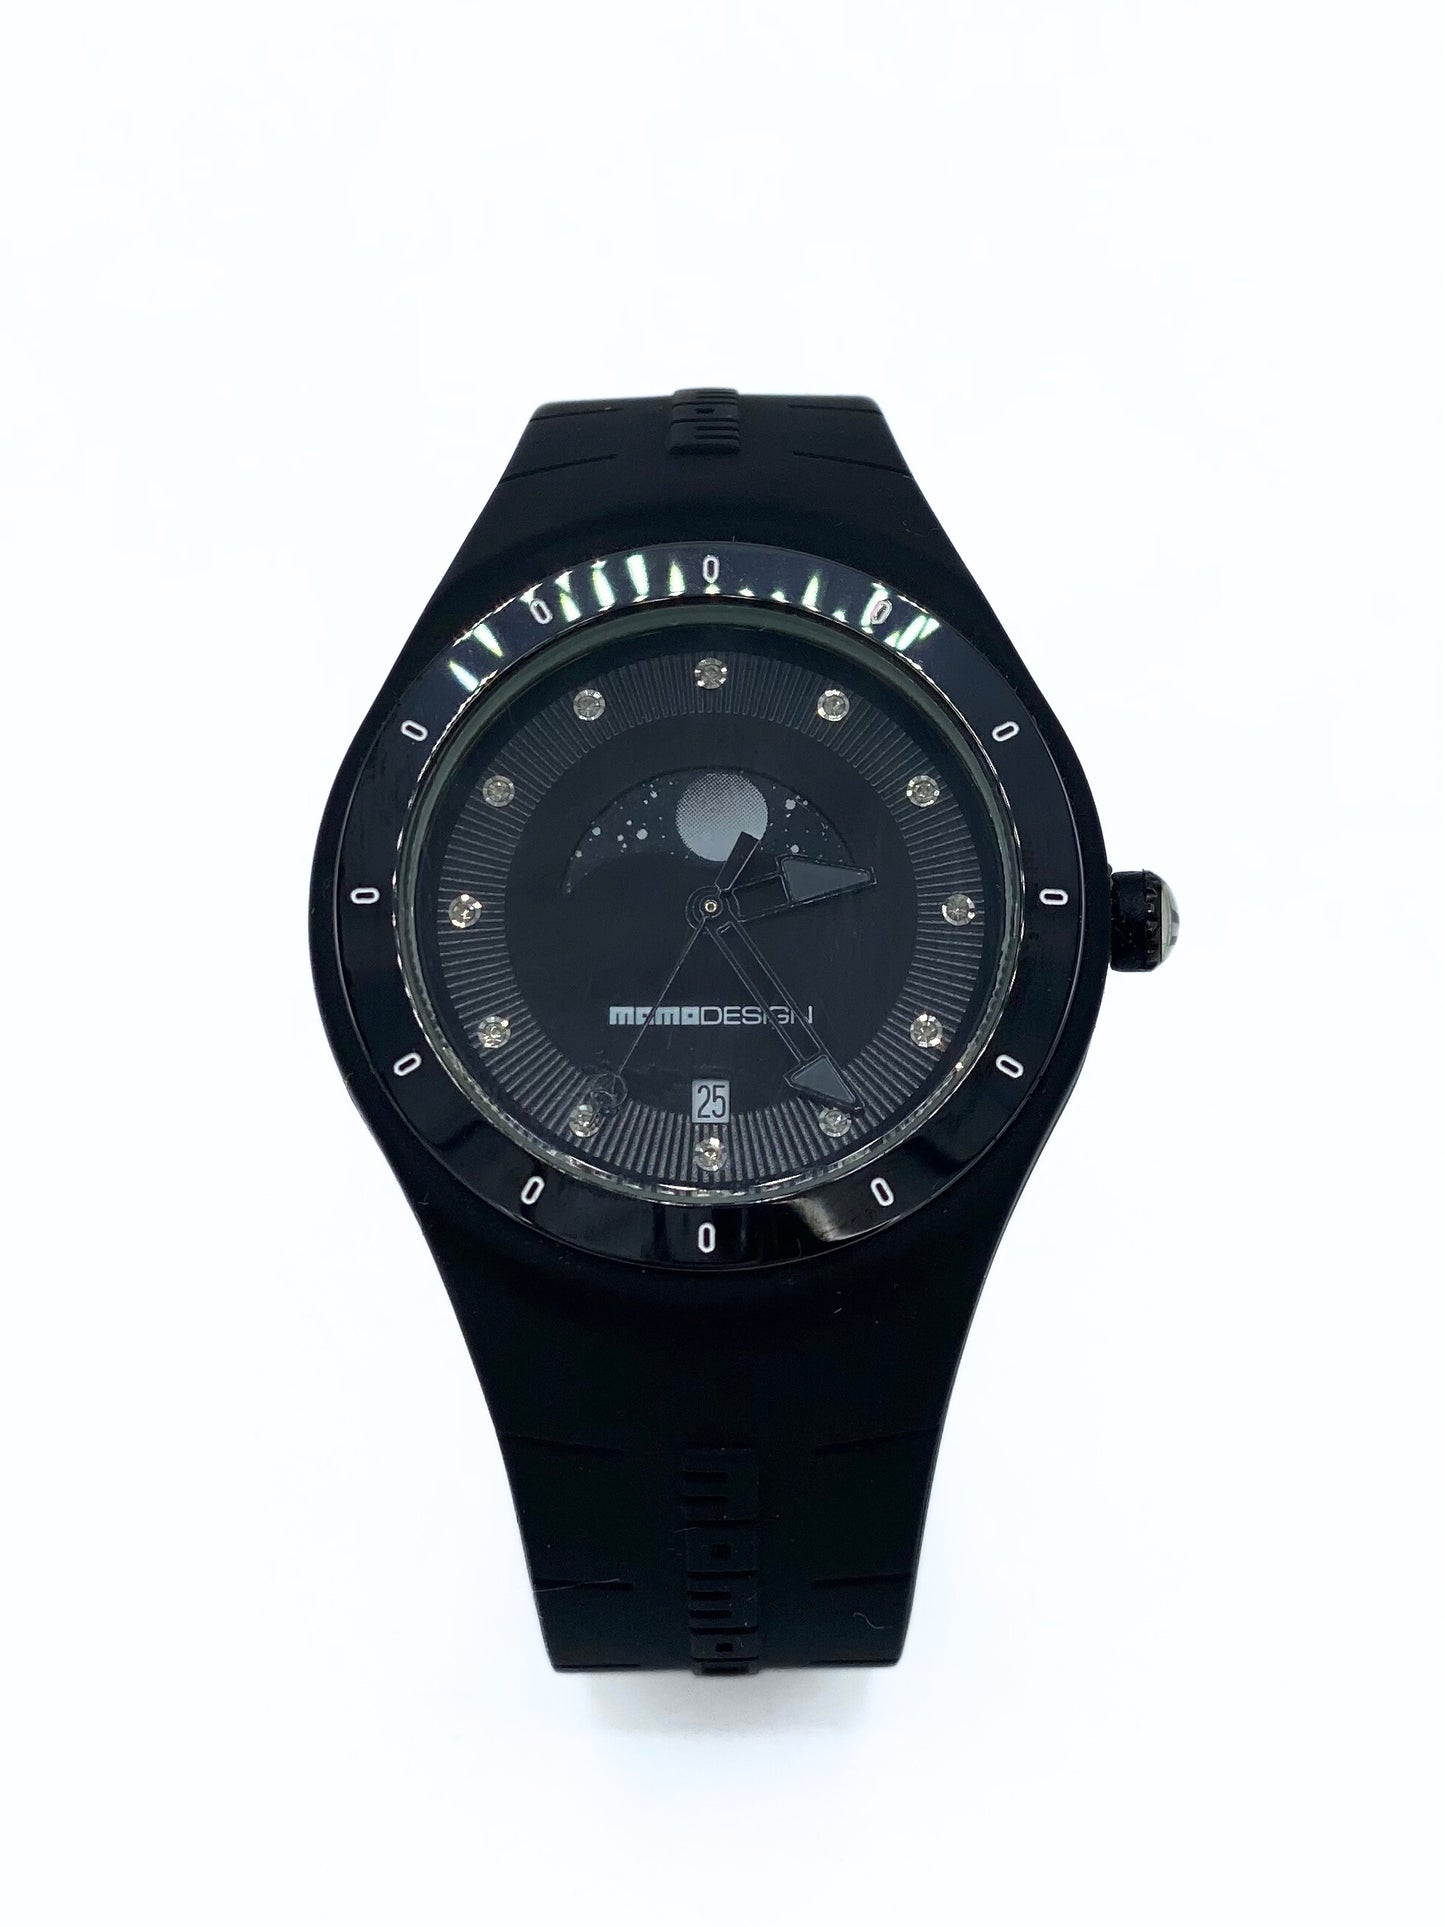 Reloj Momo Design Mirage Black